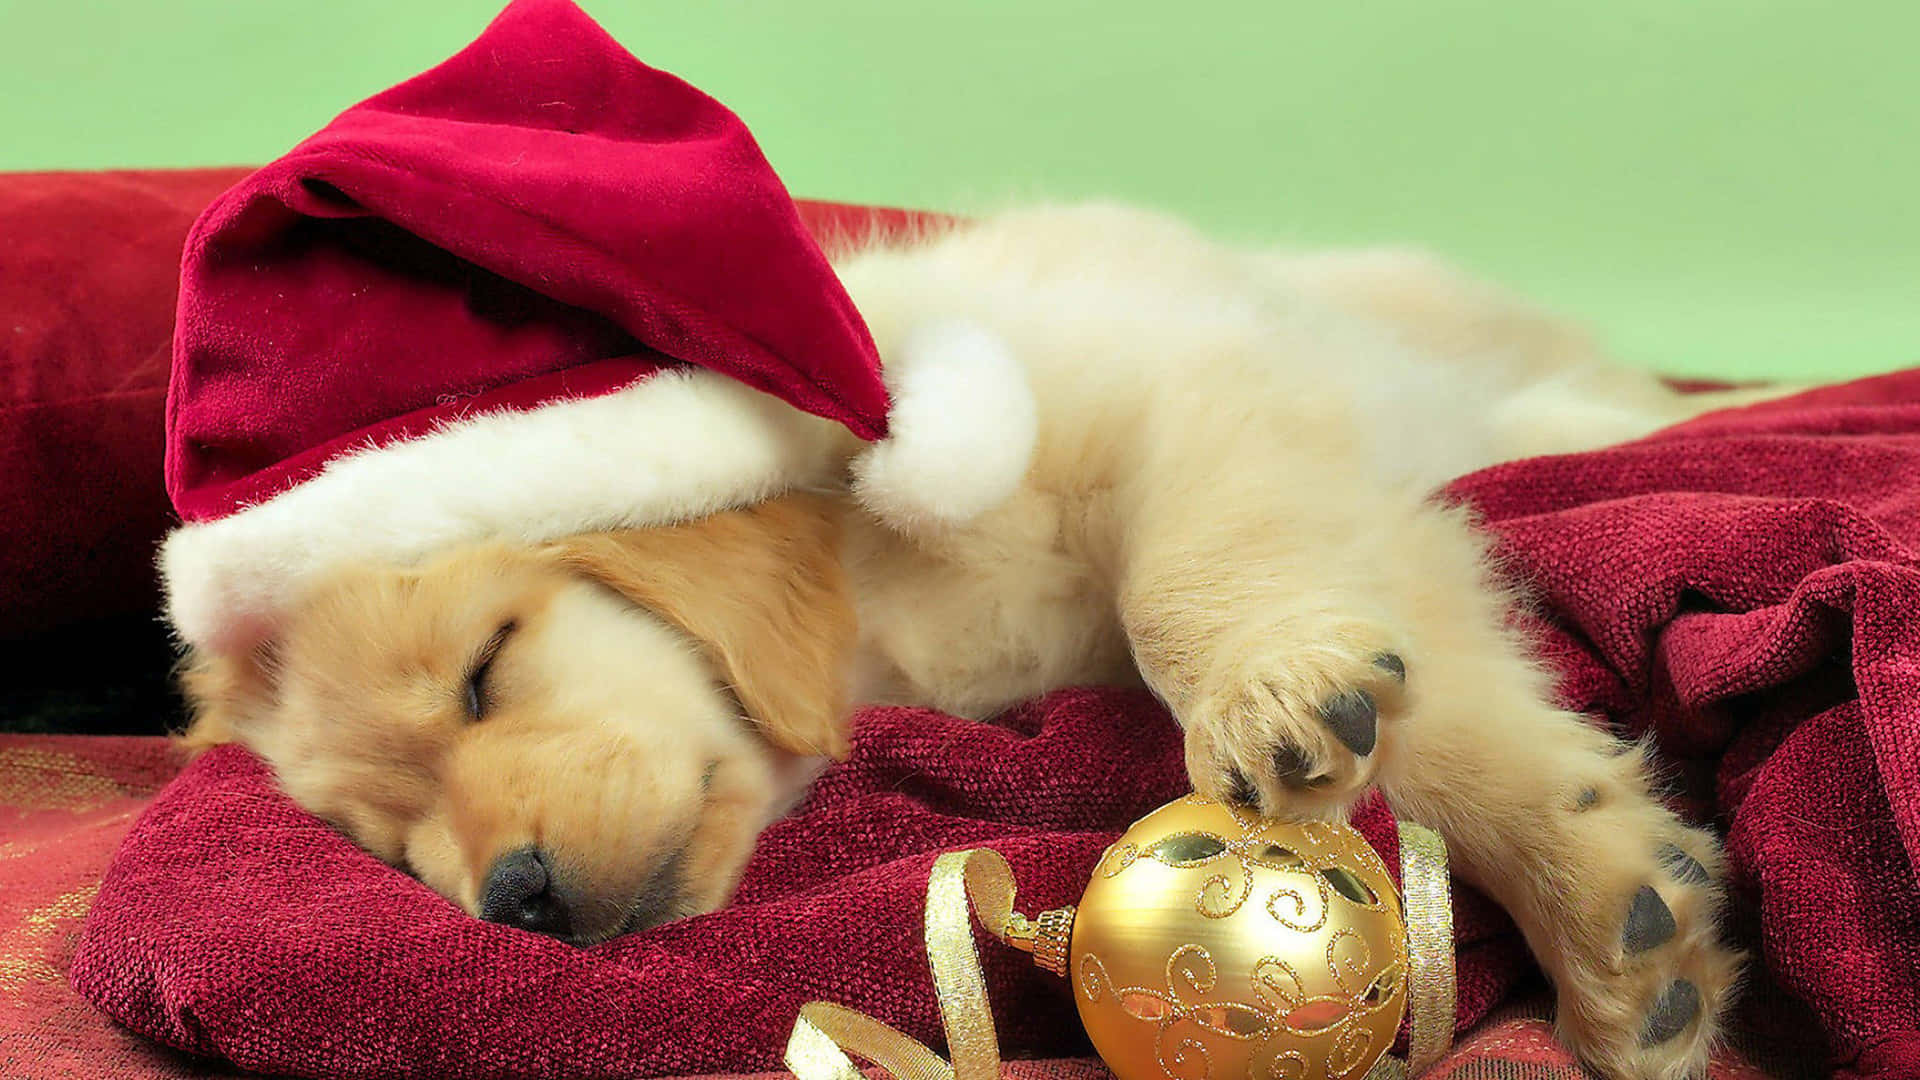 A Ball Of Golden Fur - A Golden Retriever Puppy Background